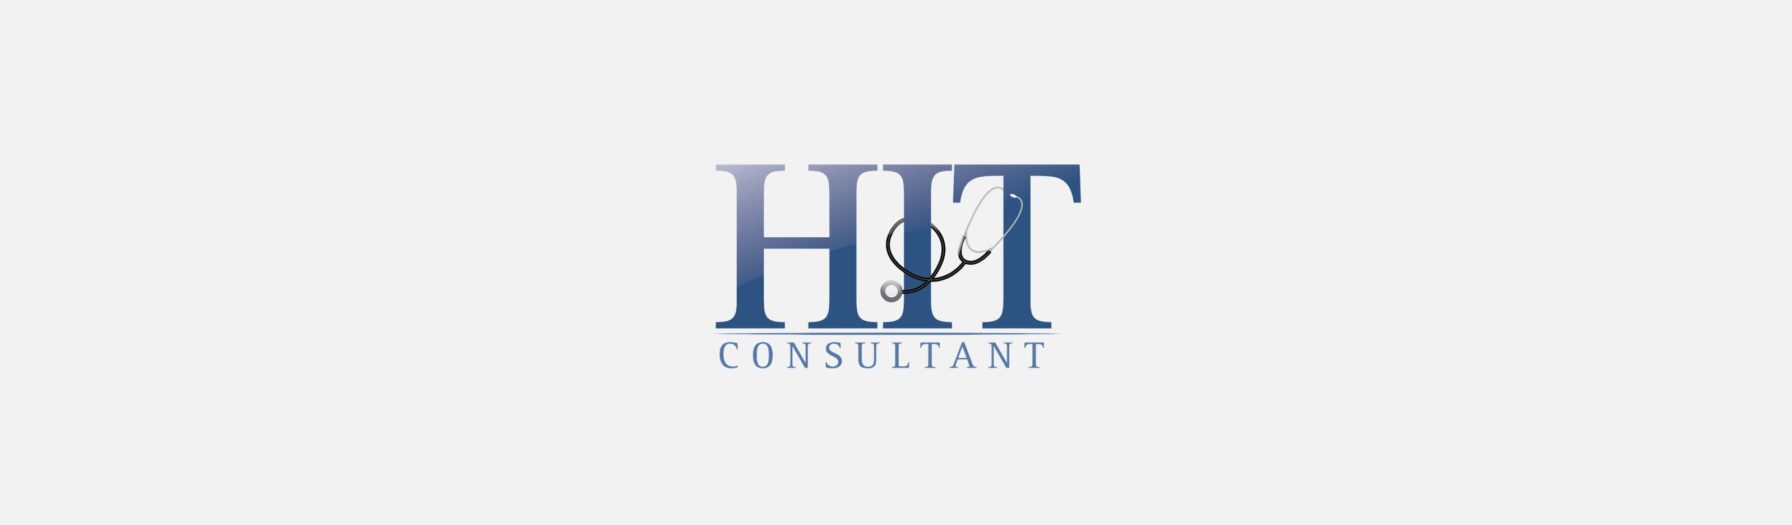  HIT Consultant logo